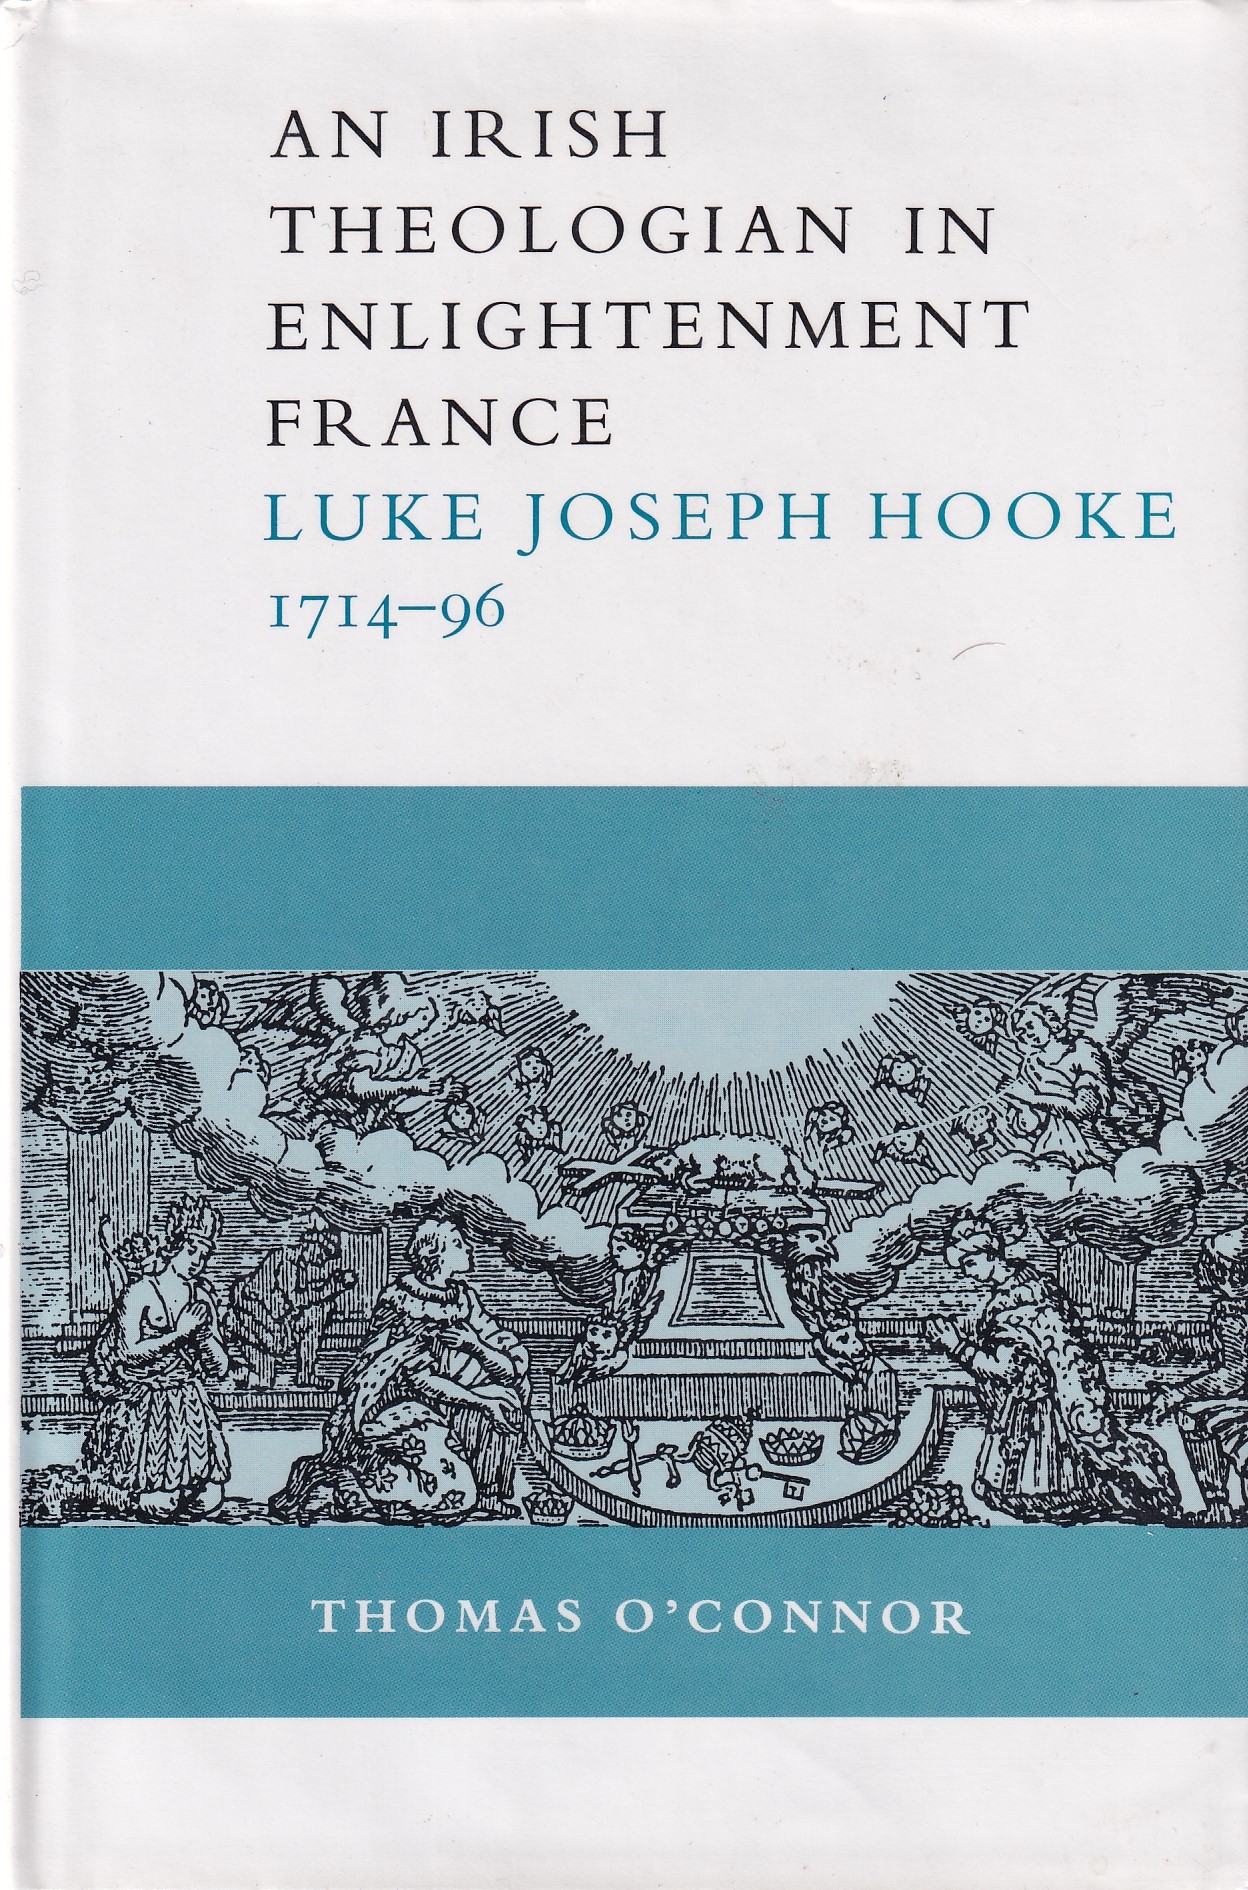 An Irish Theologian in Enlightenment France: Luke Joseph Hooke, 1714-96 by Thomas O'Connor